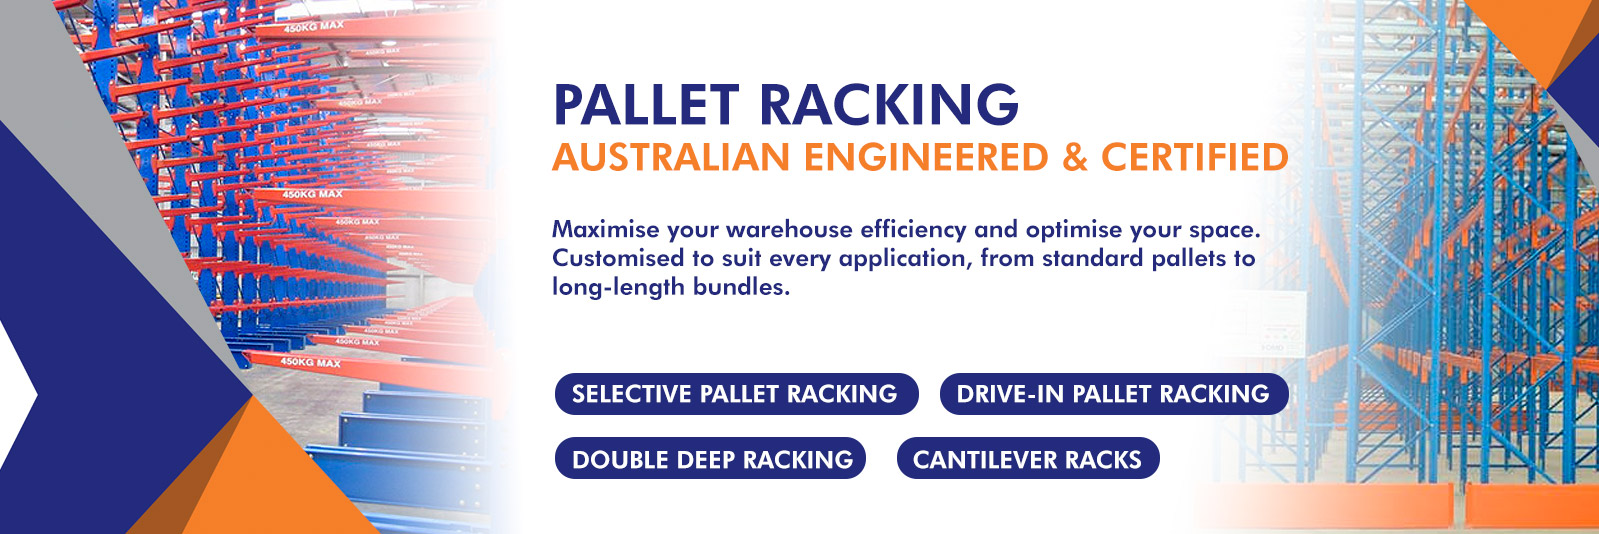 Pallet Racking Perth